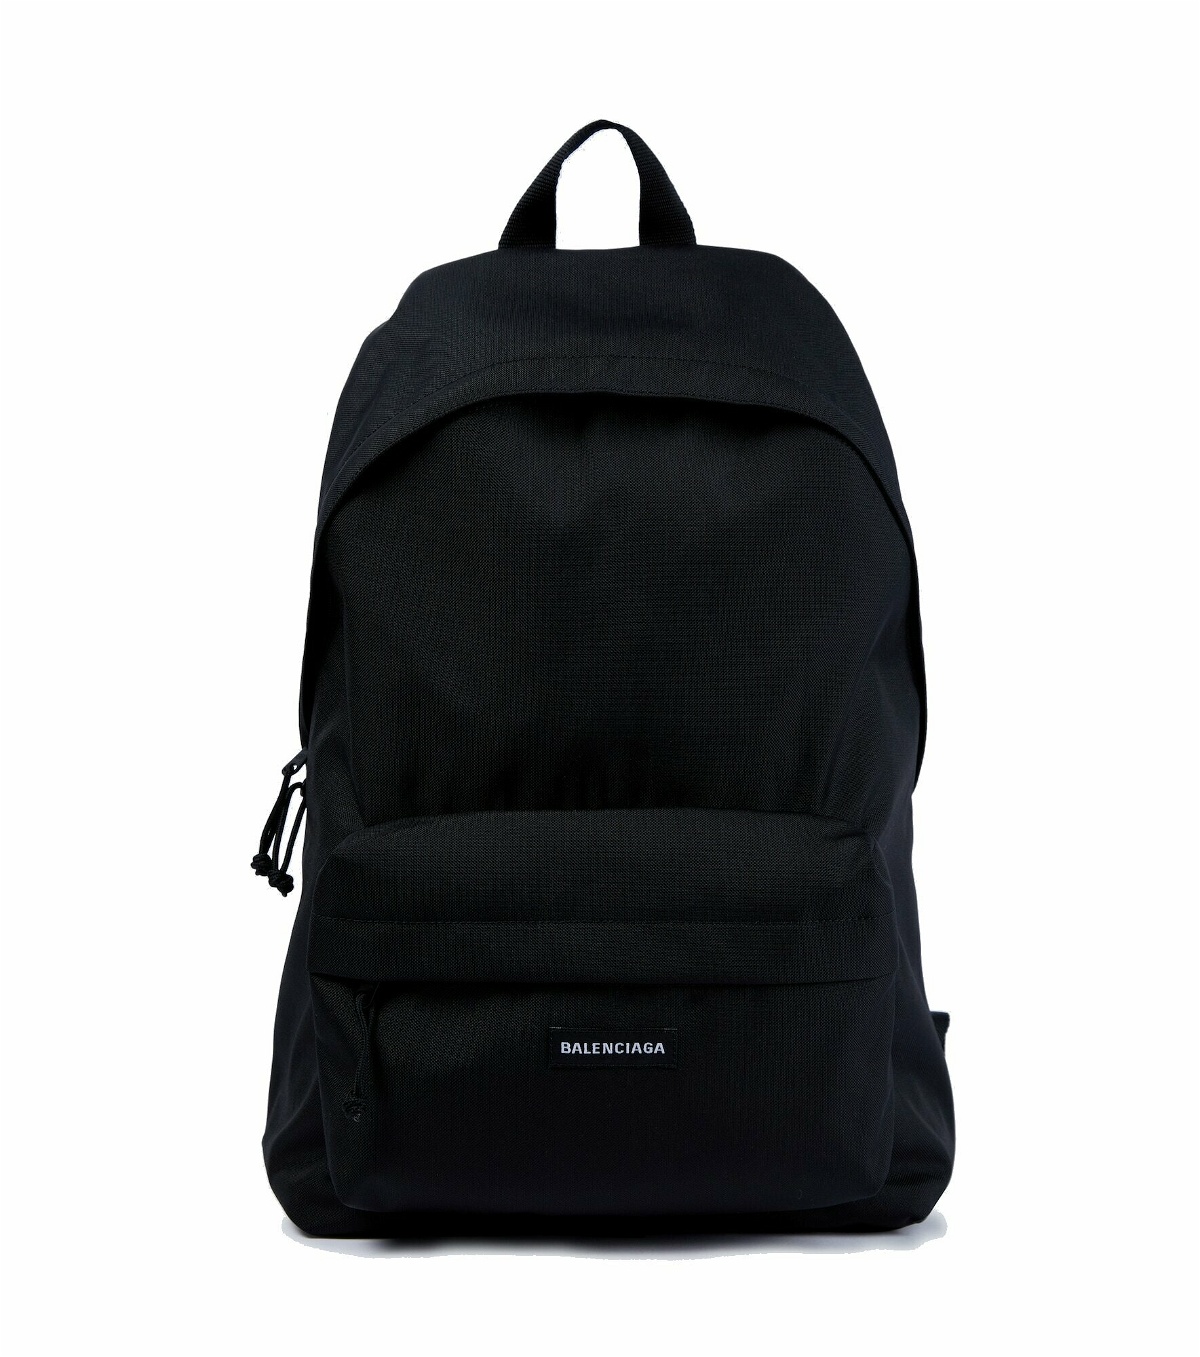 Balenciaga - Explorer backpack Balenciaga